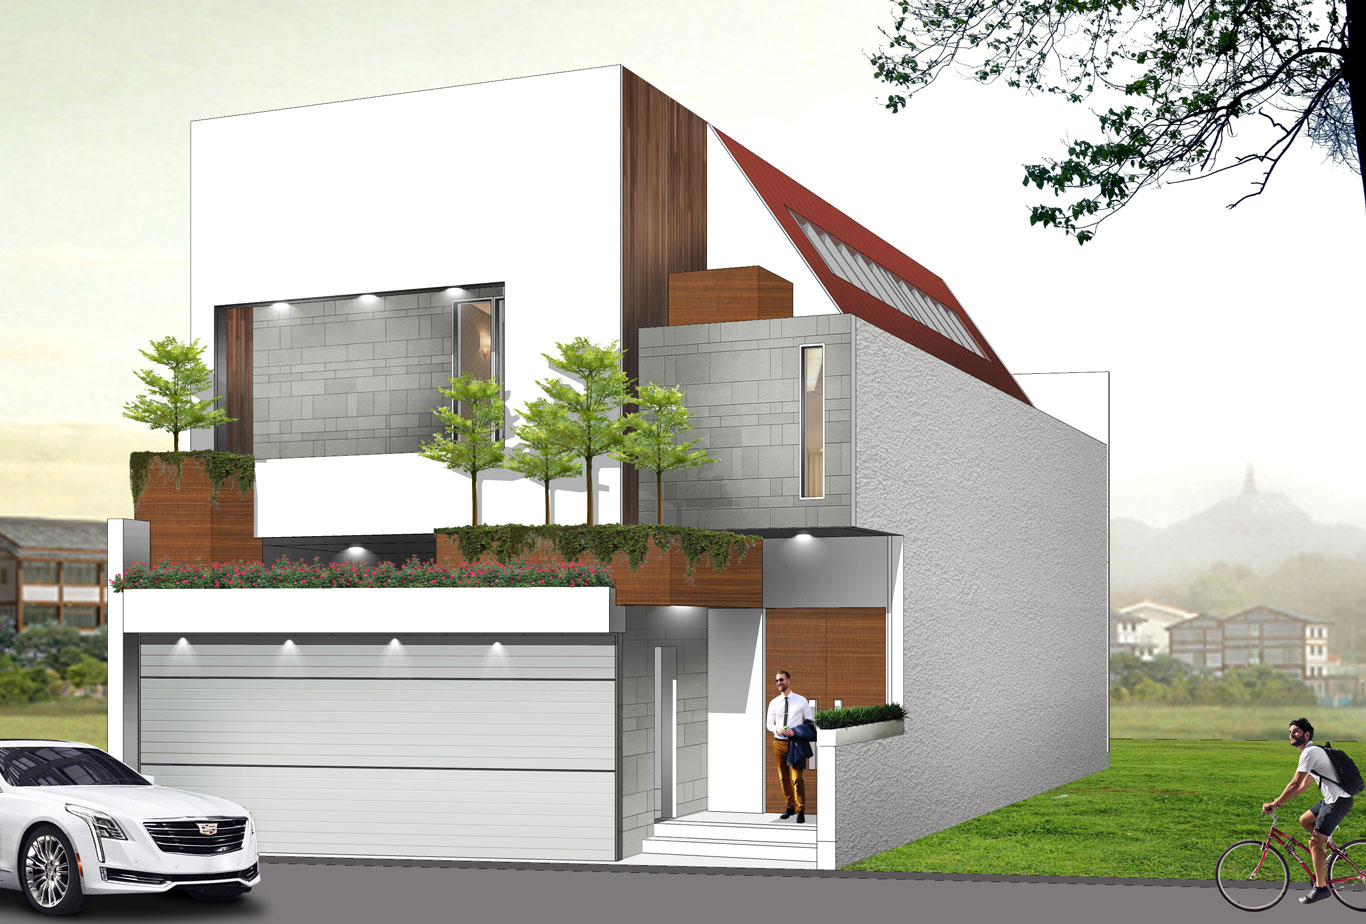 jasa desain rumah minimalis di surabaya